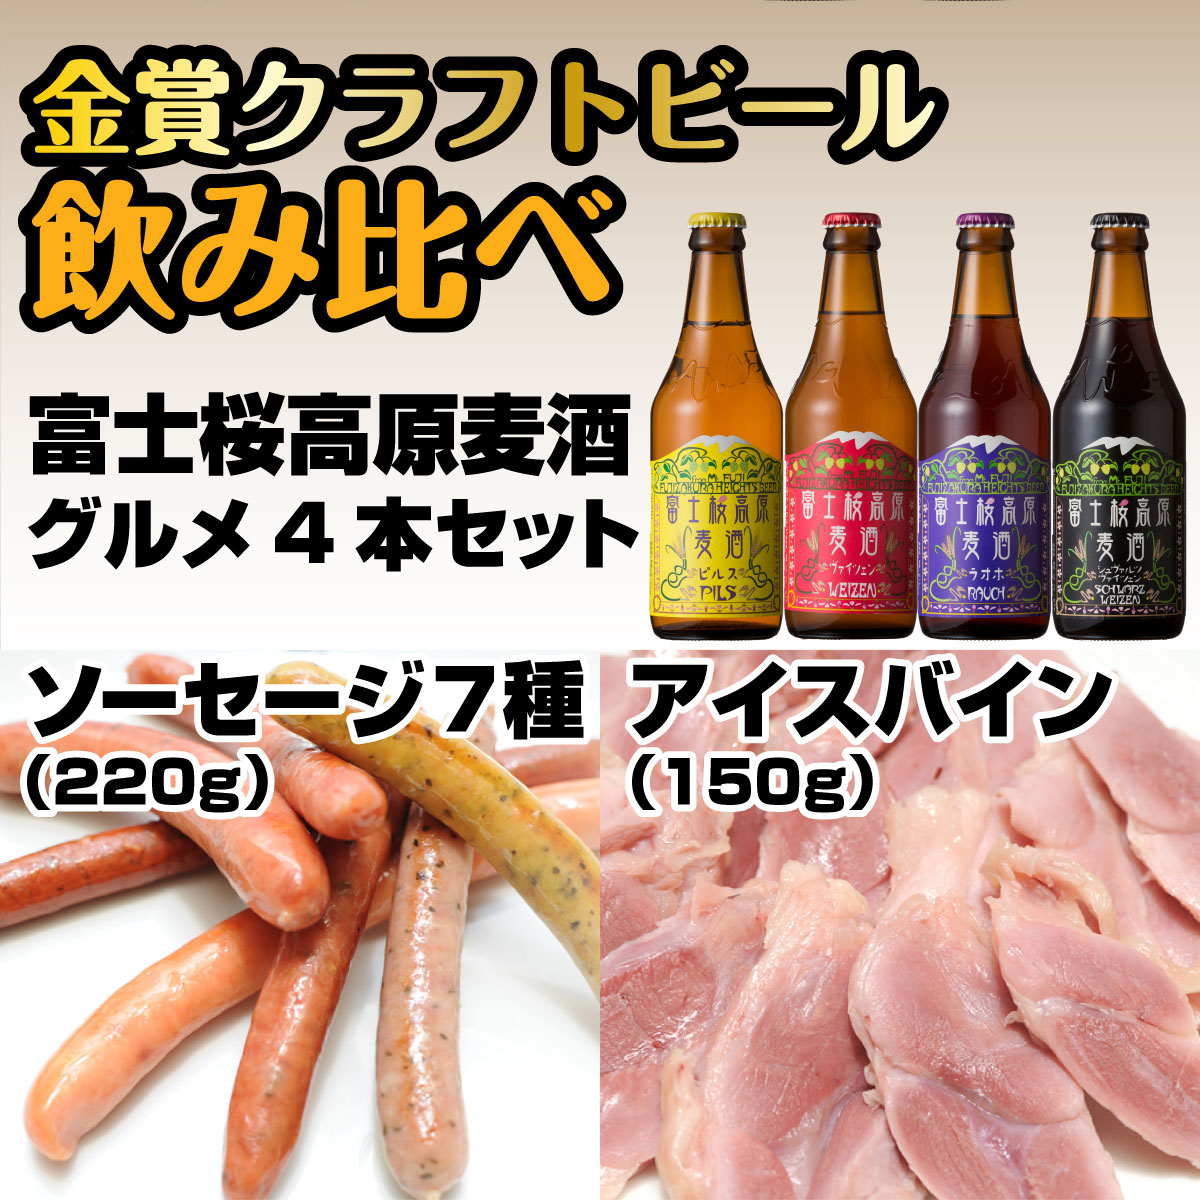 富士桜高原麦酒グルメ4本セット 金賞クラフトビール飲み比べ